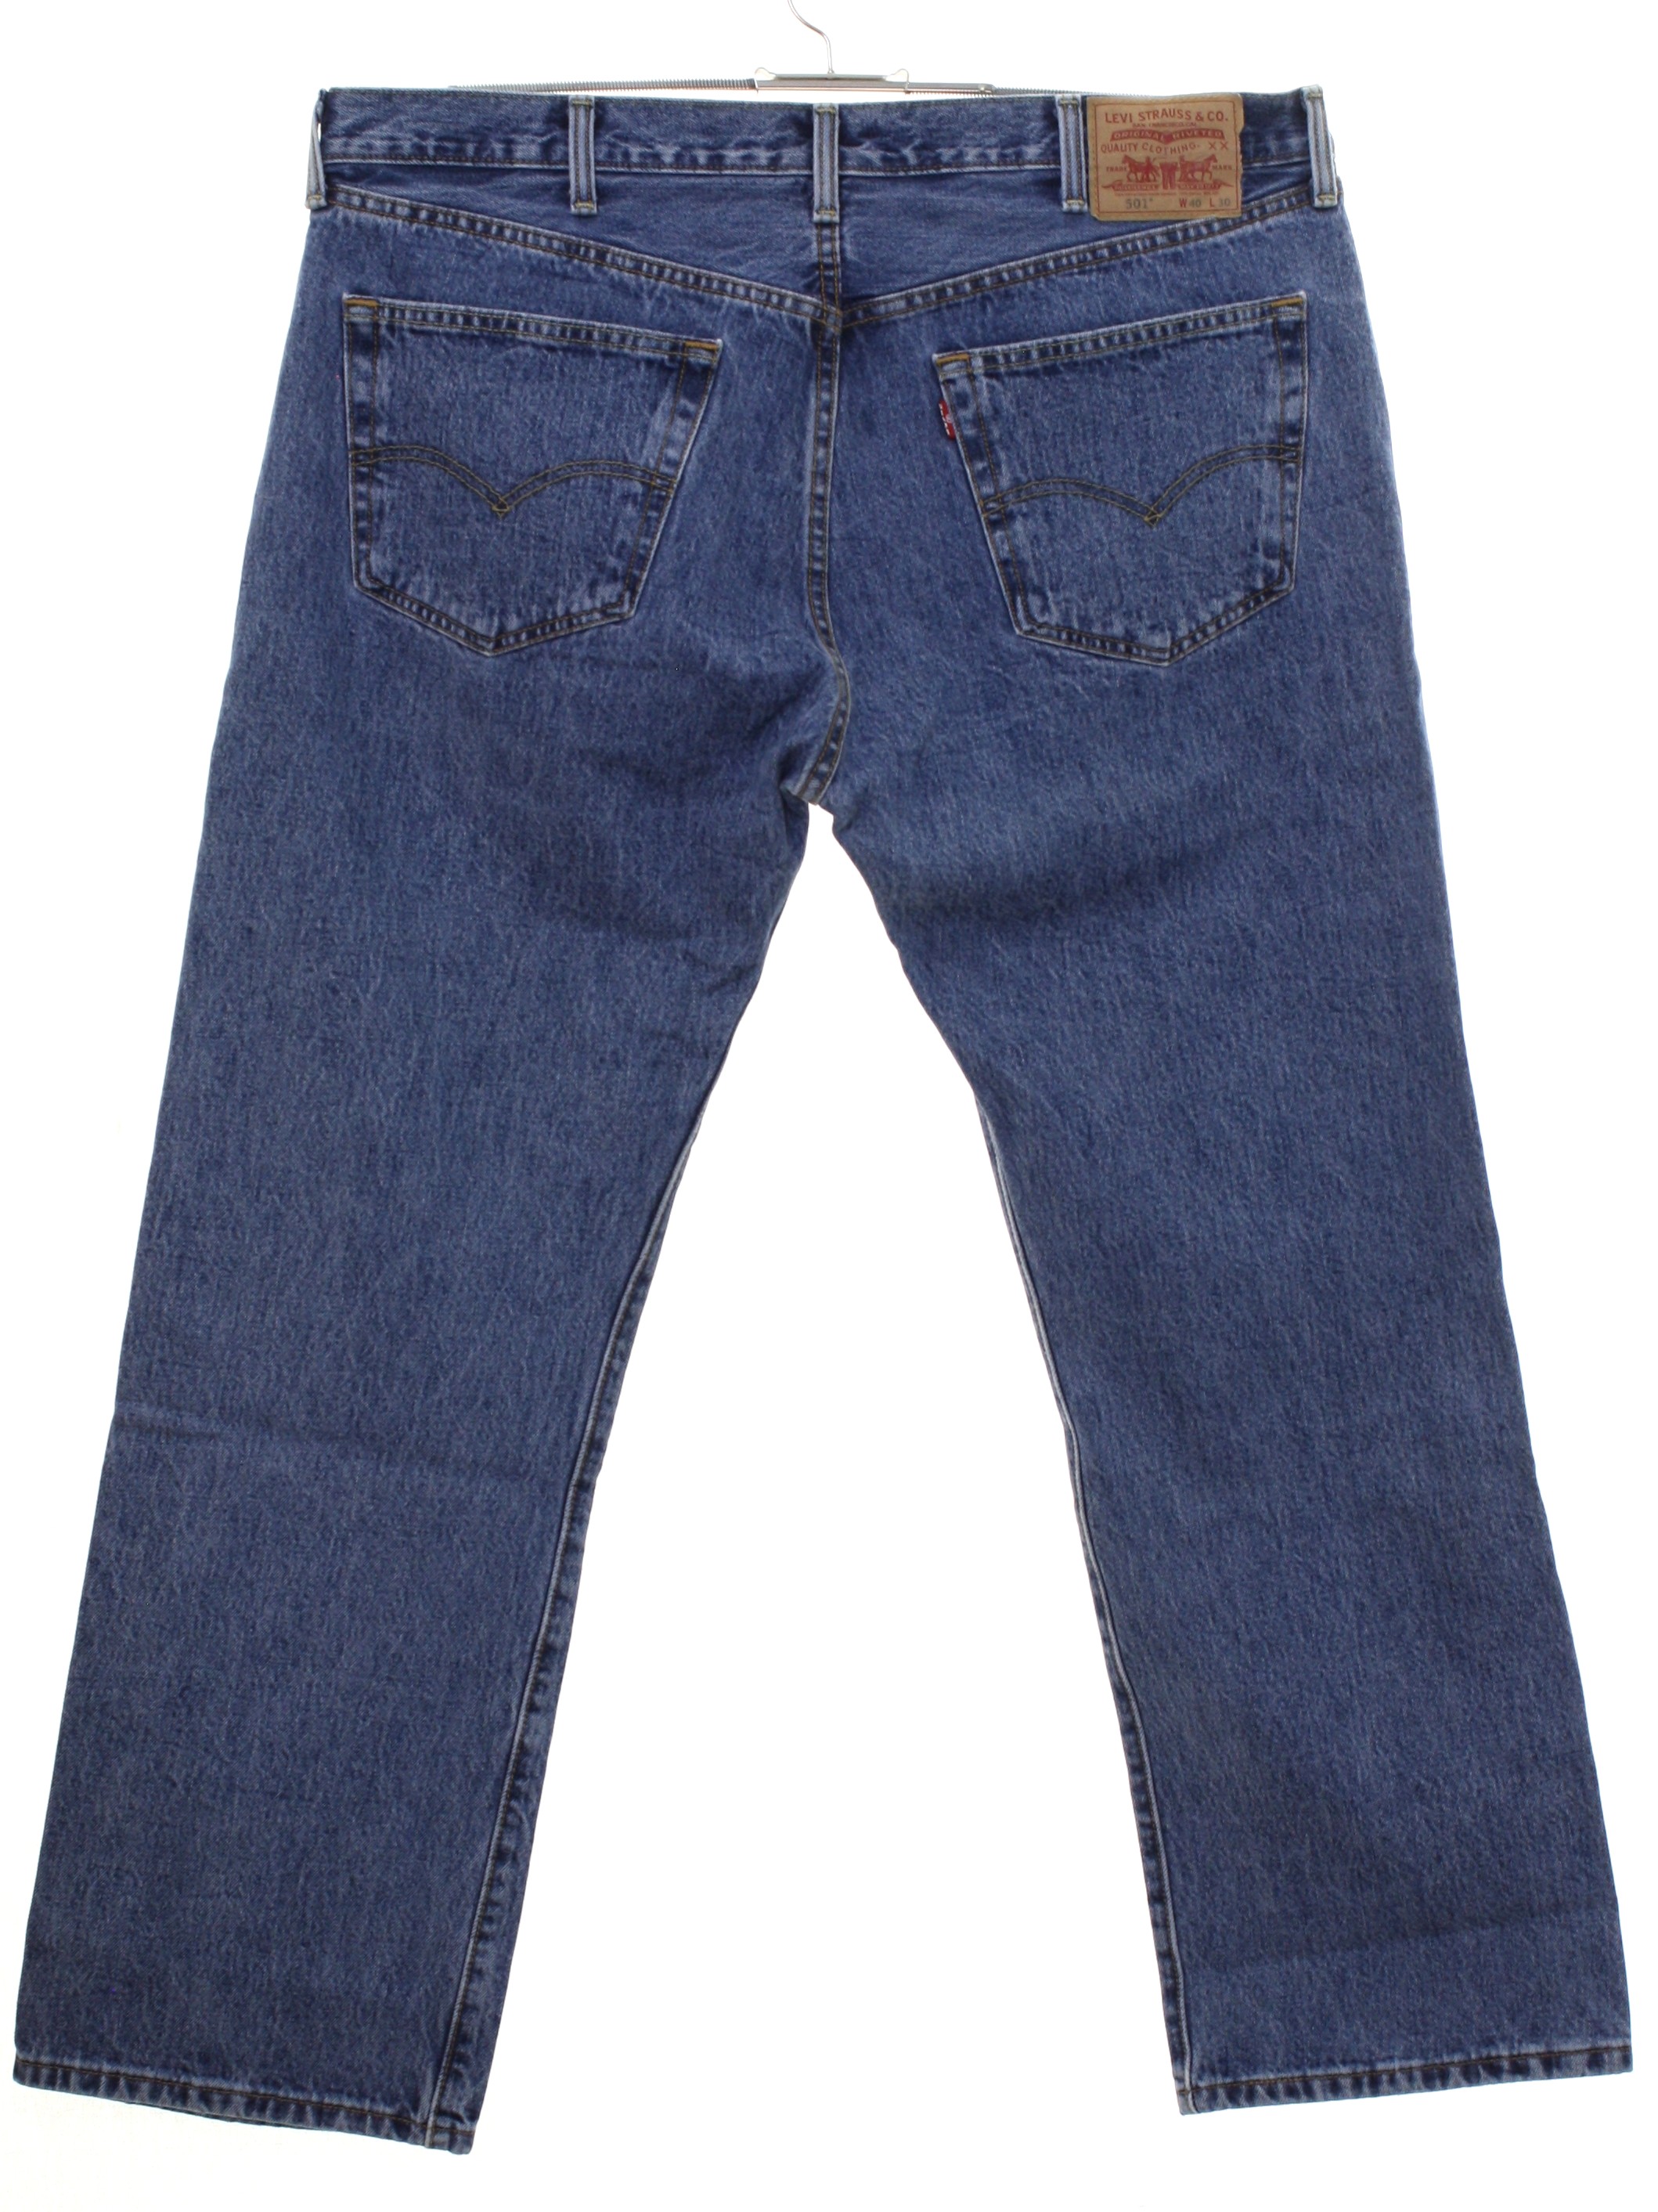 Nineties Vintage Pants: 90s -Levis 501- Mens well worn blue background ...